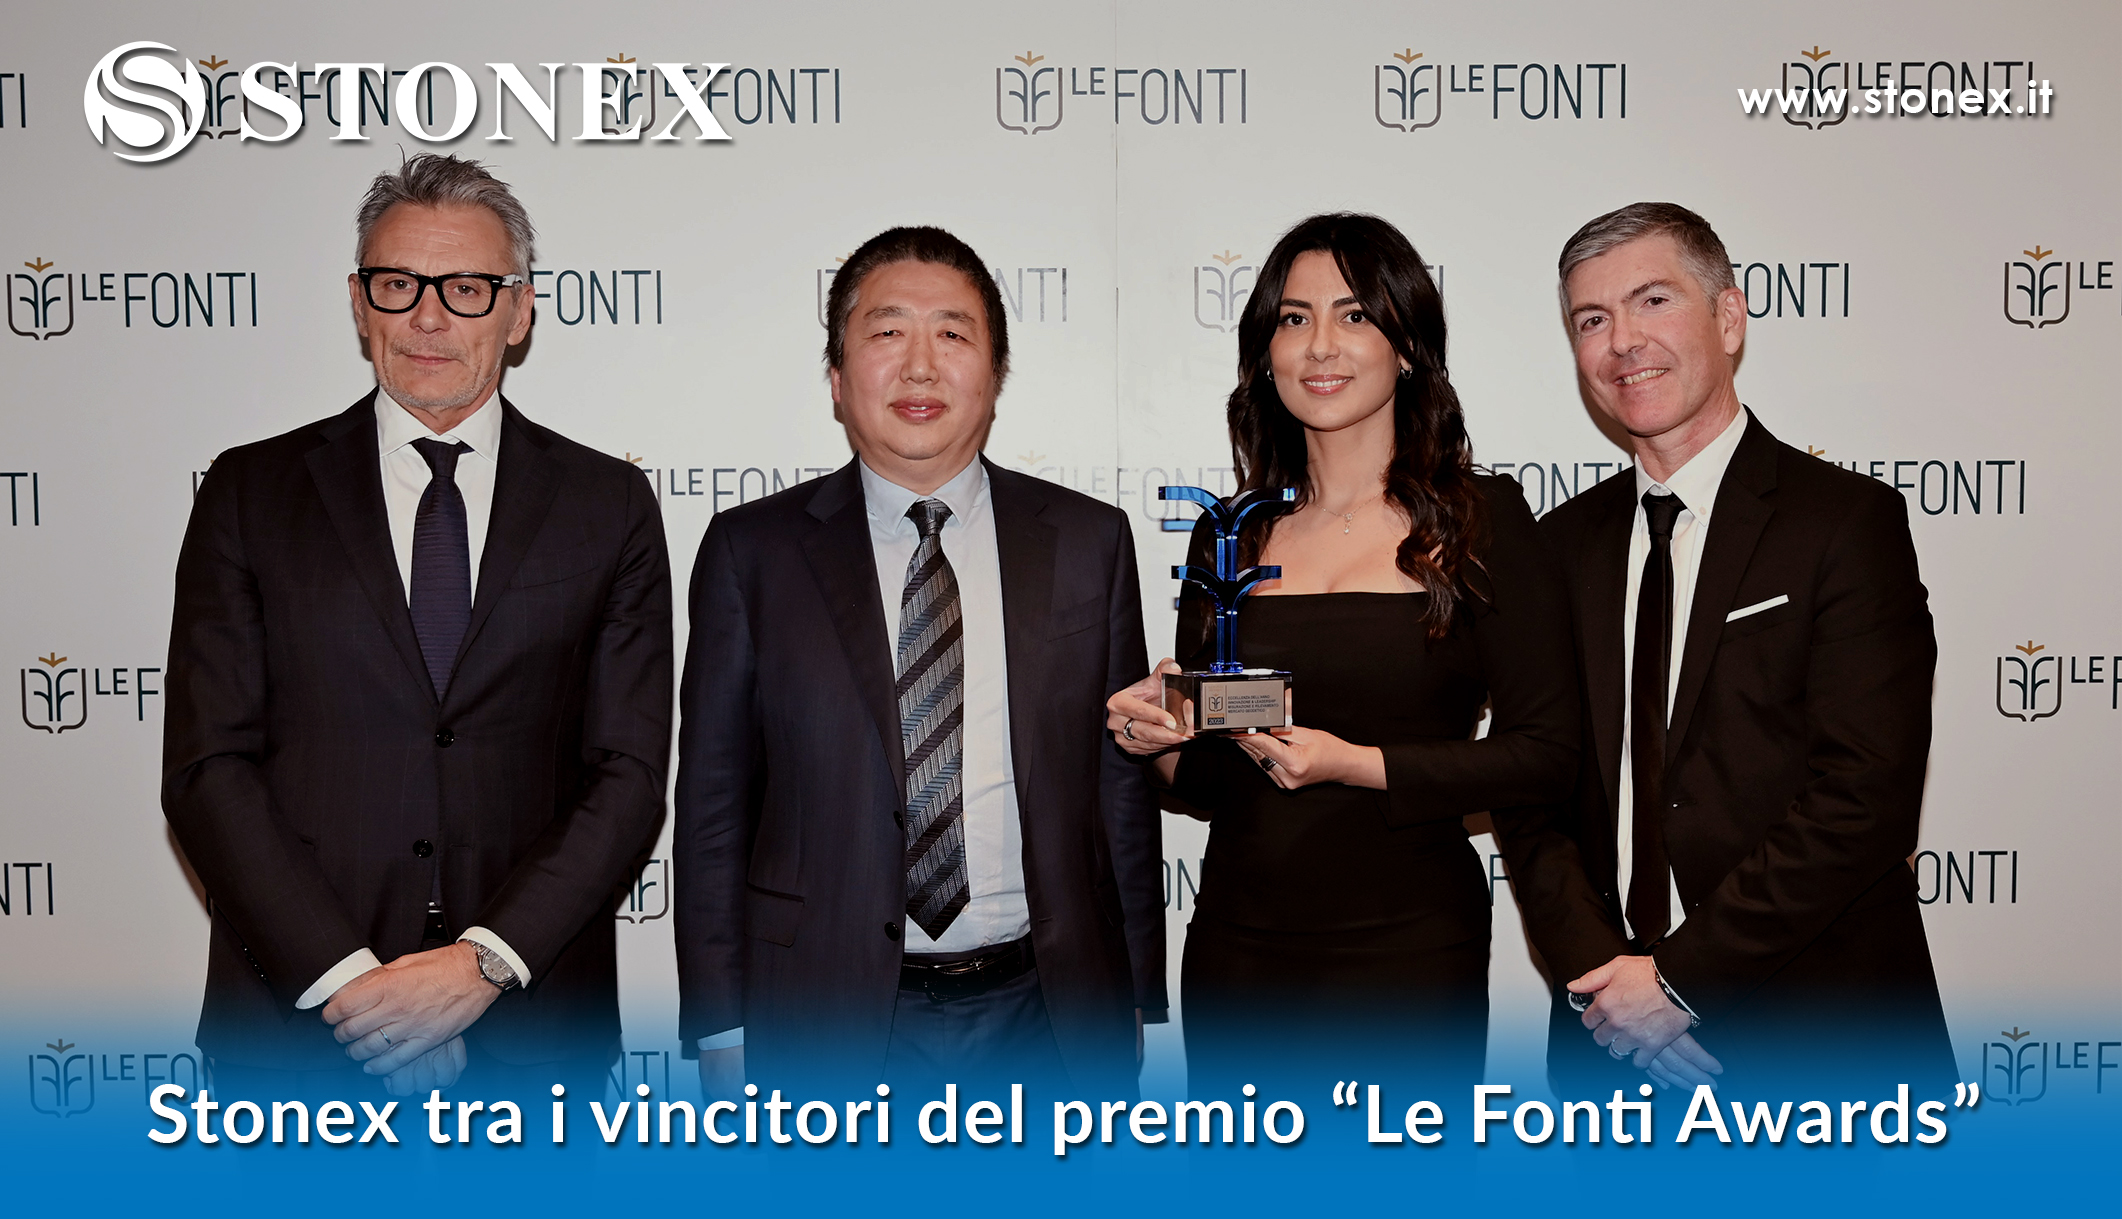 Stonex tra i vincitori del premio “Le Fonti Awards”